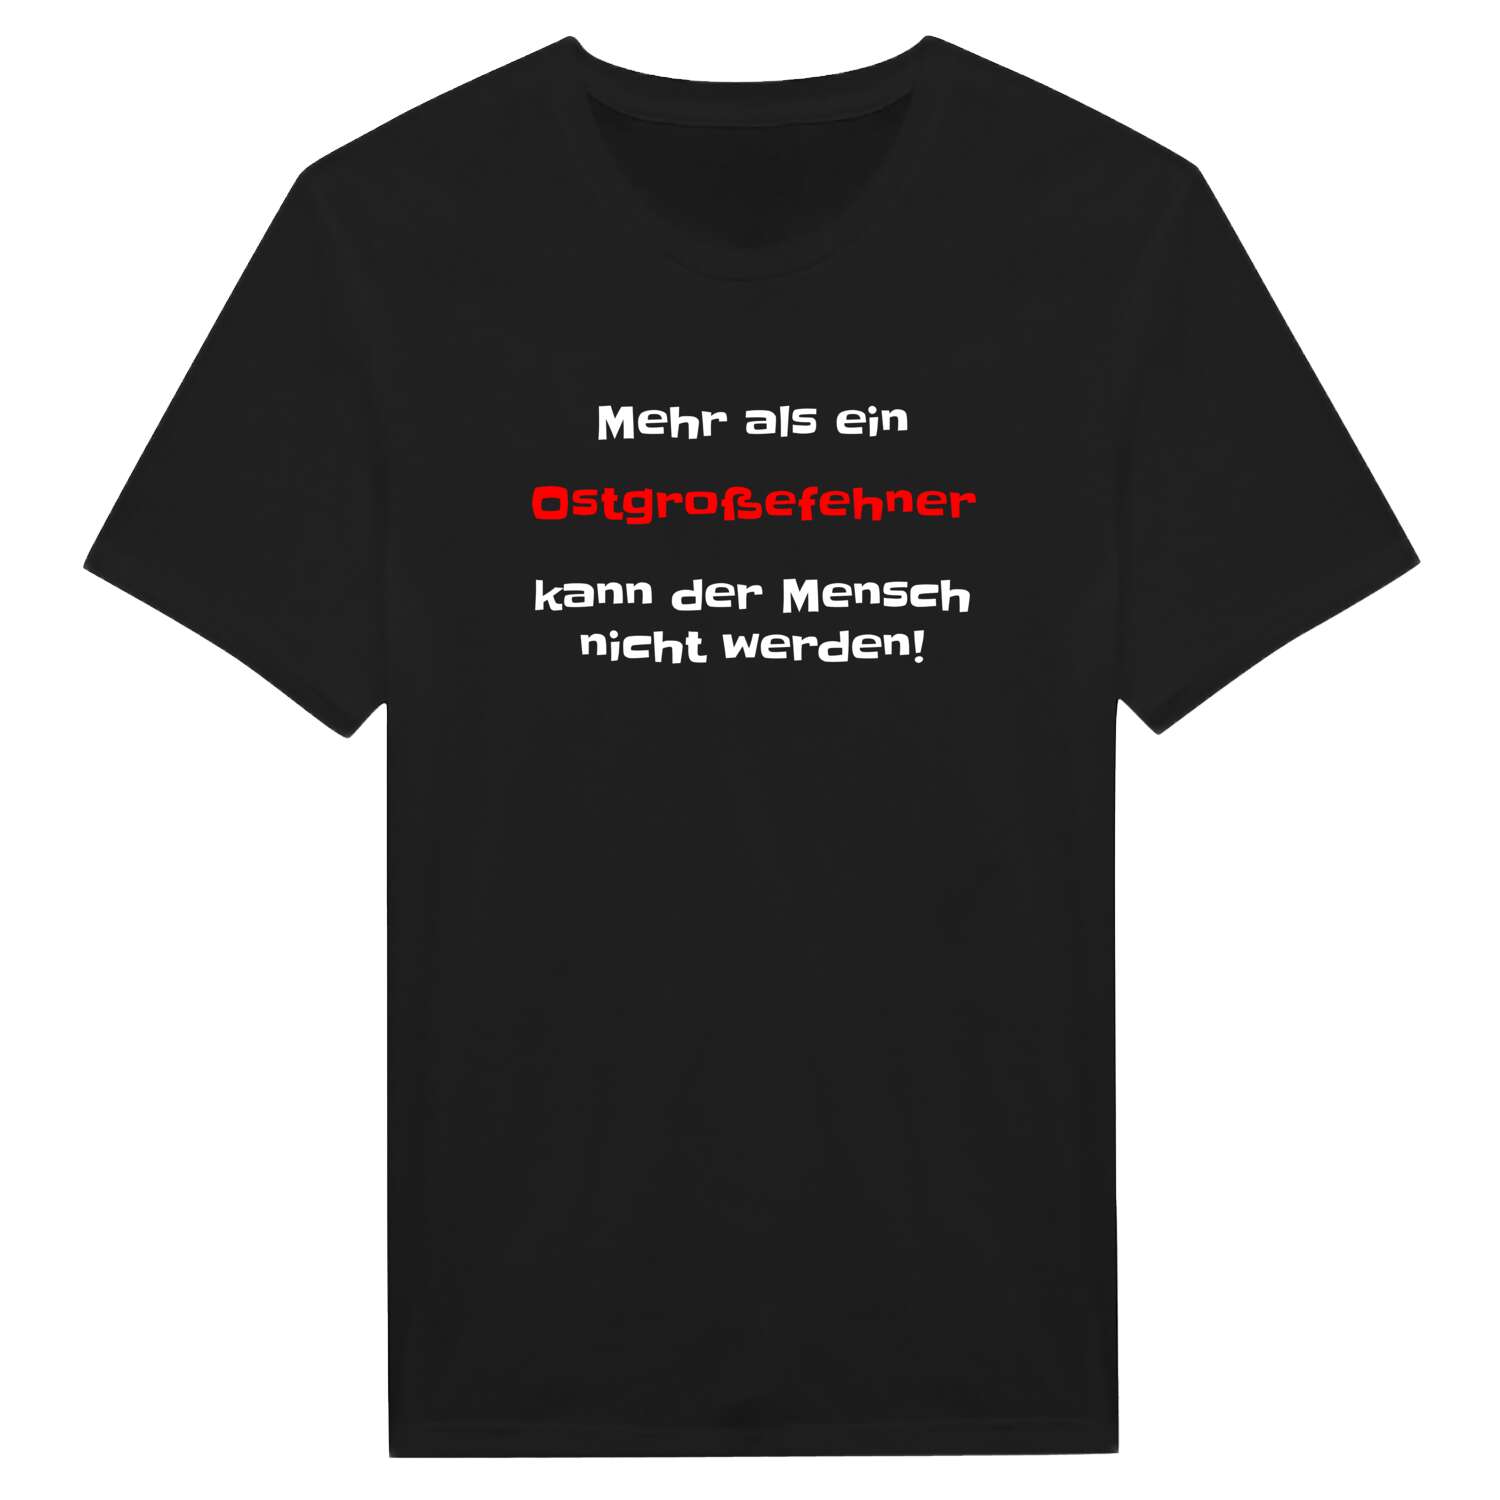 Ostgroßefehn T-Shirt »Mehr als ein«